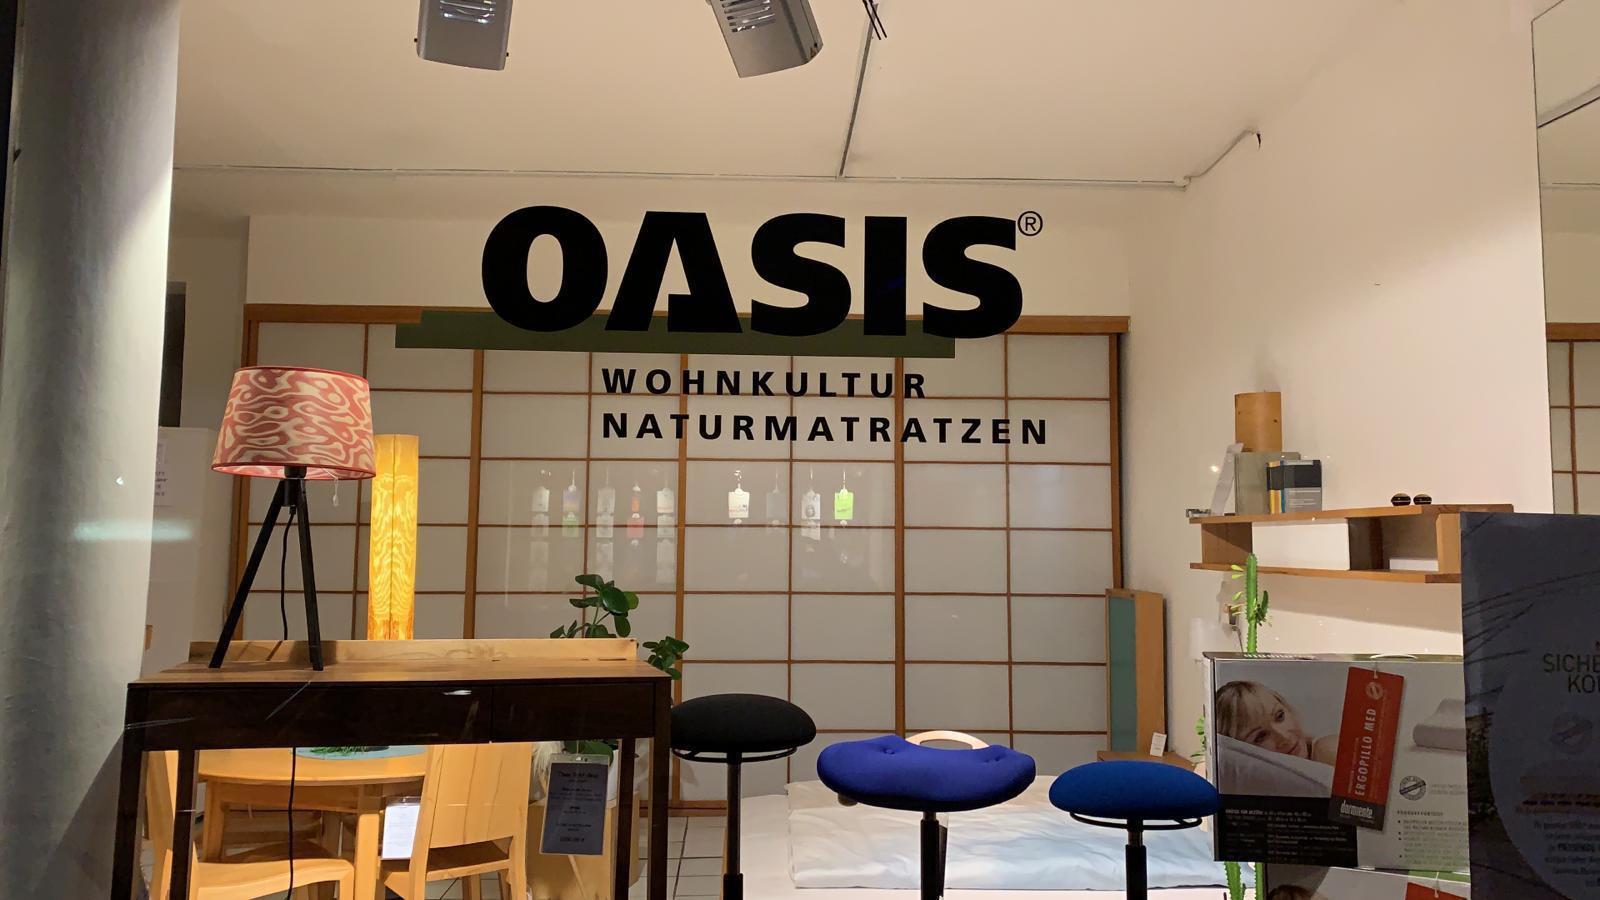 OASIS Wohnkultur & Naturmatratzen, Reichenbachstrasse 39 in München